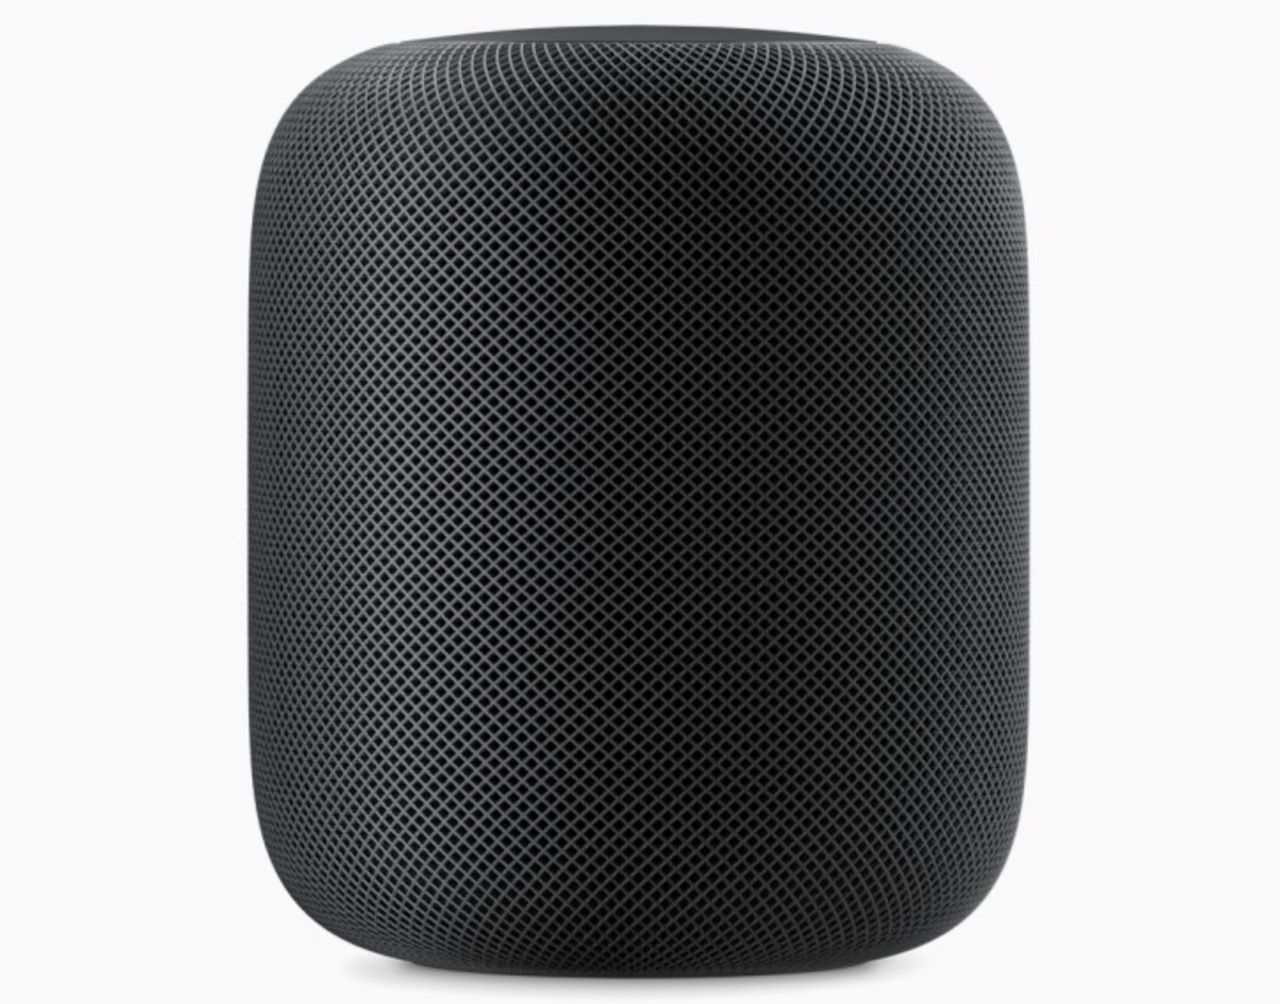 Saiba mais detalhes sobre o “HomePod” o speaker inteligente da Apple